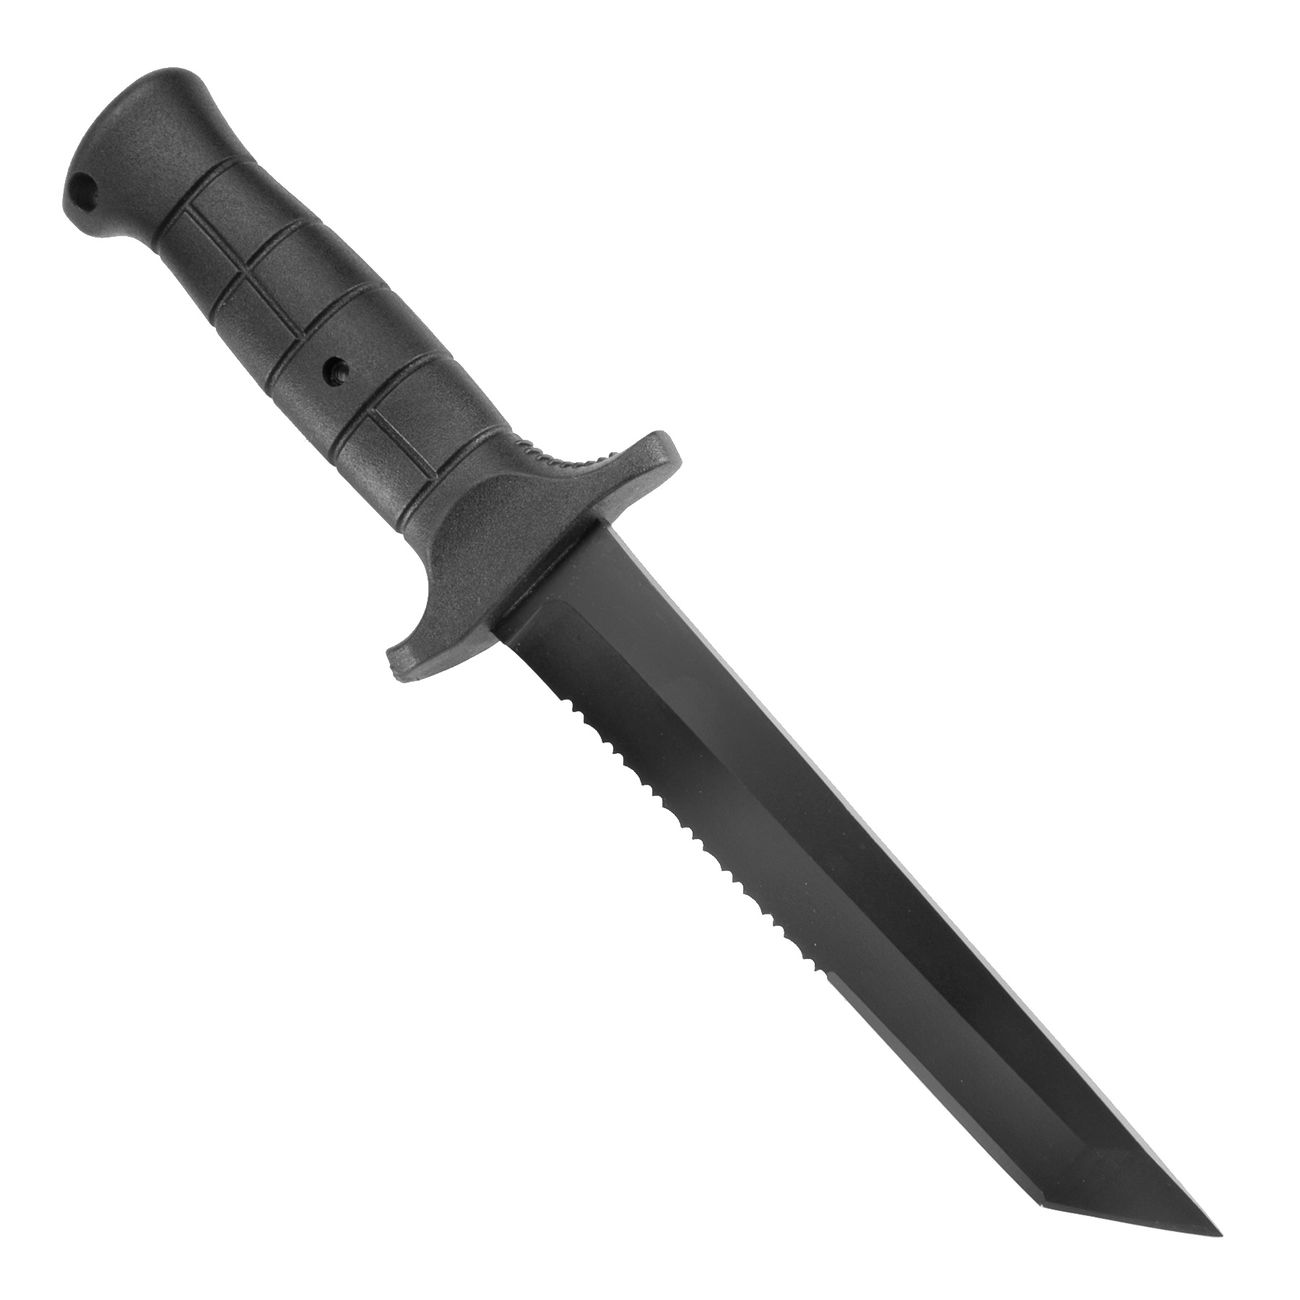 MFH Einsatzmesser mit Tantoklinge inkl. Scheide schwarz Bild 1